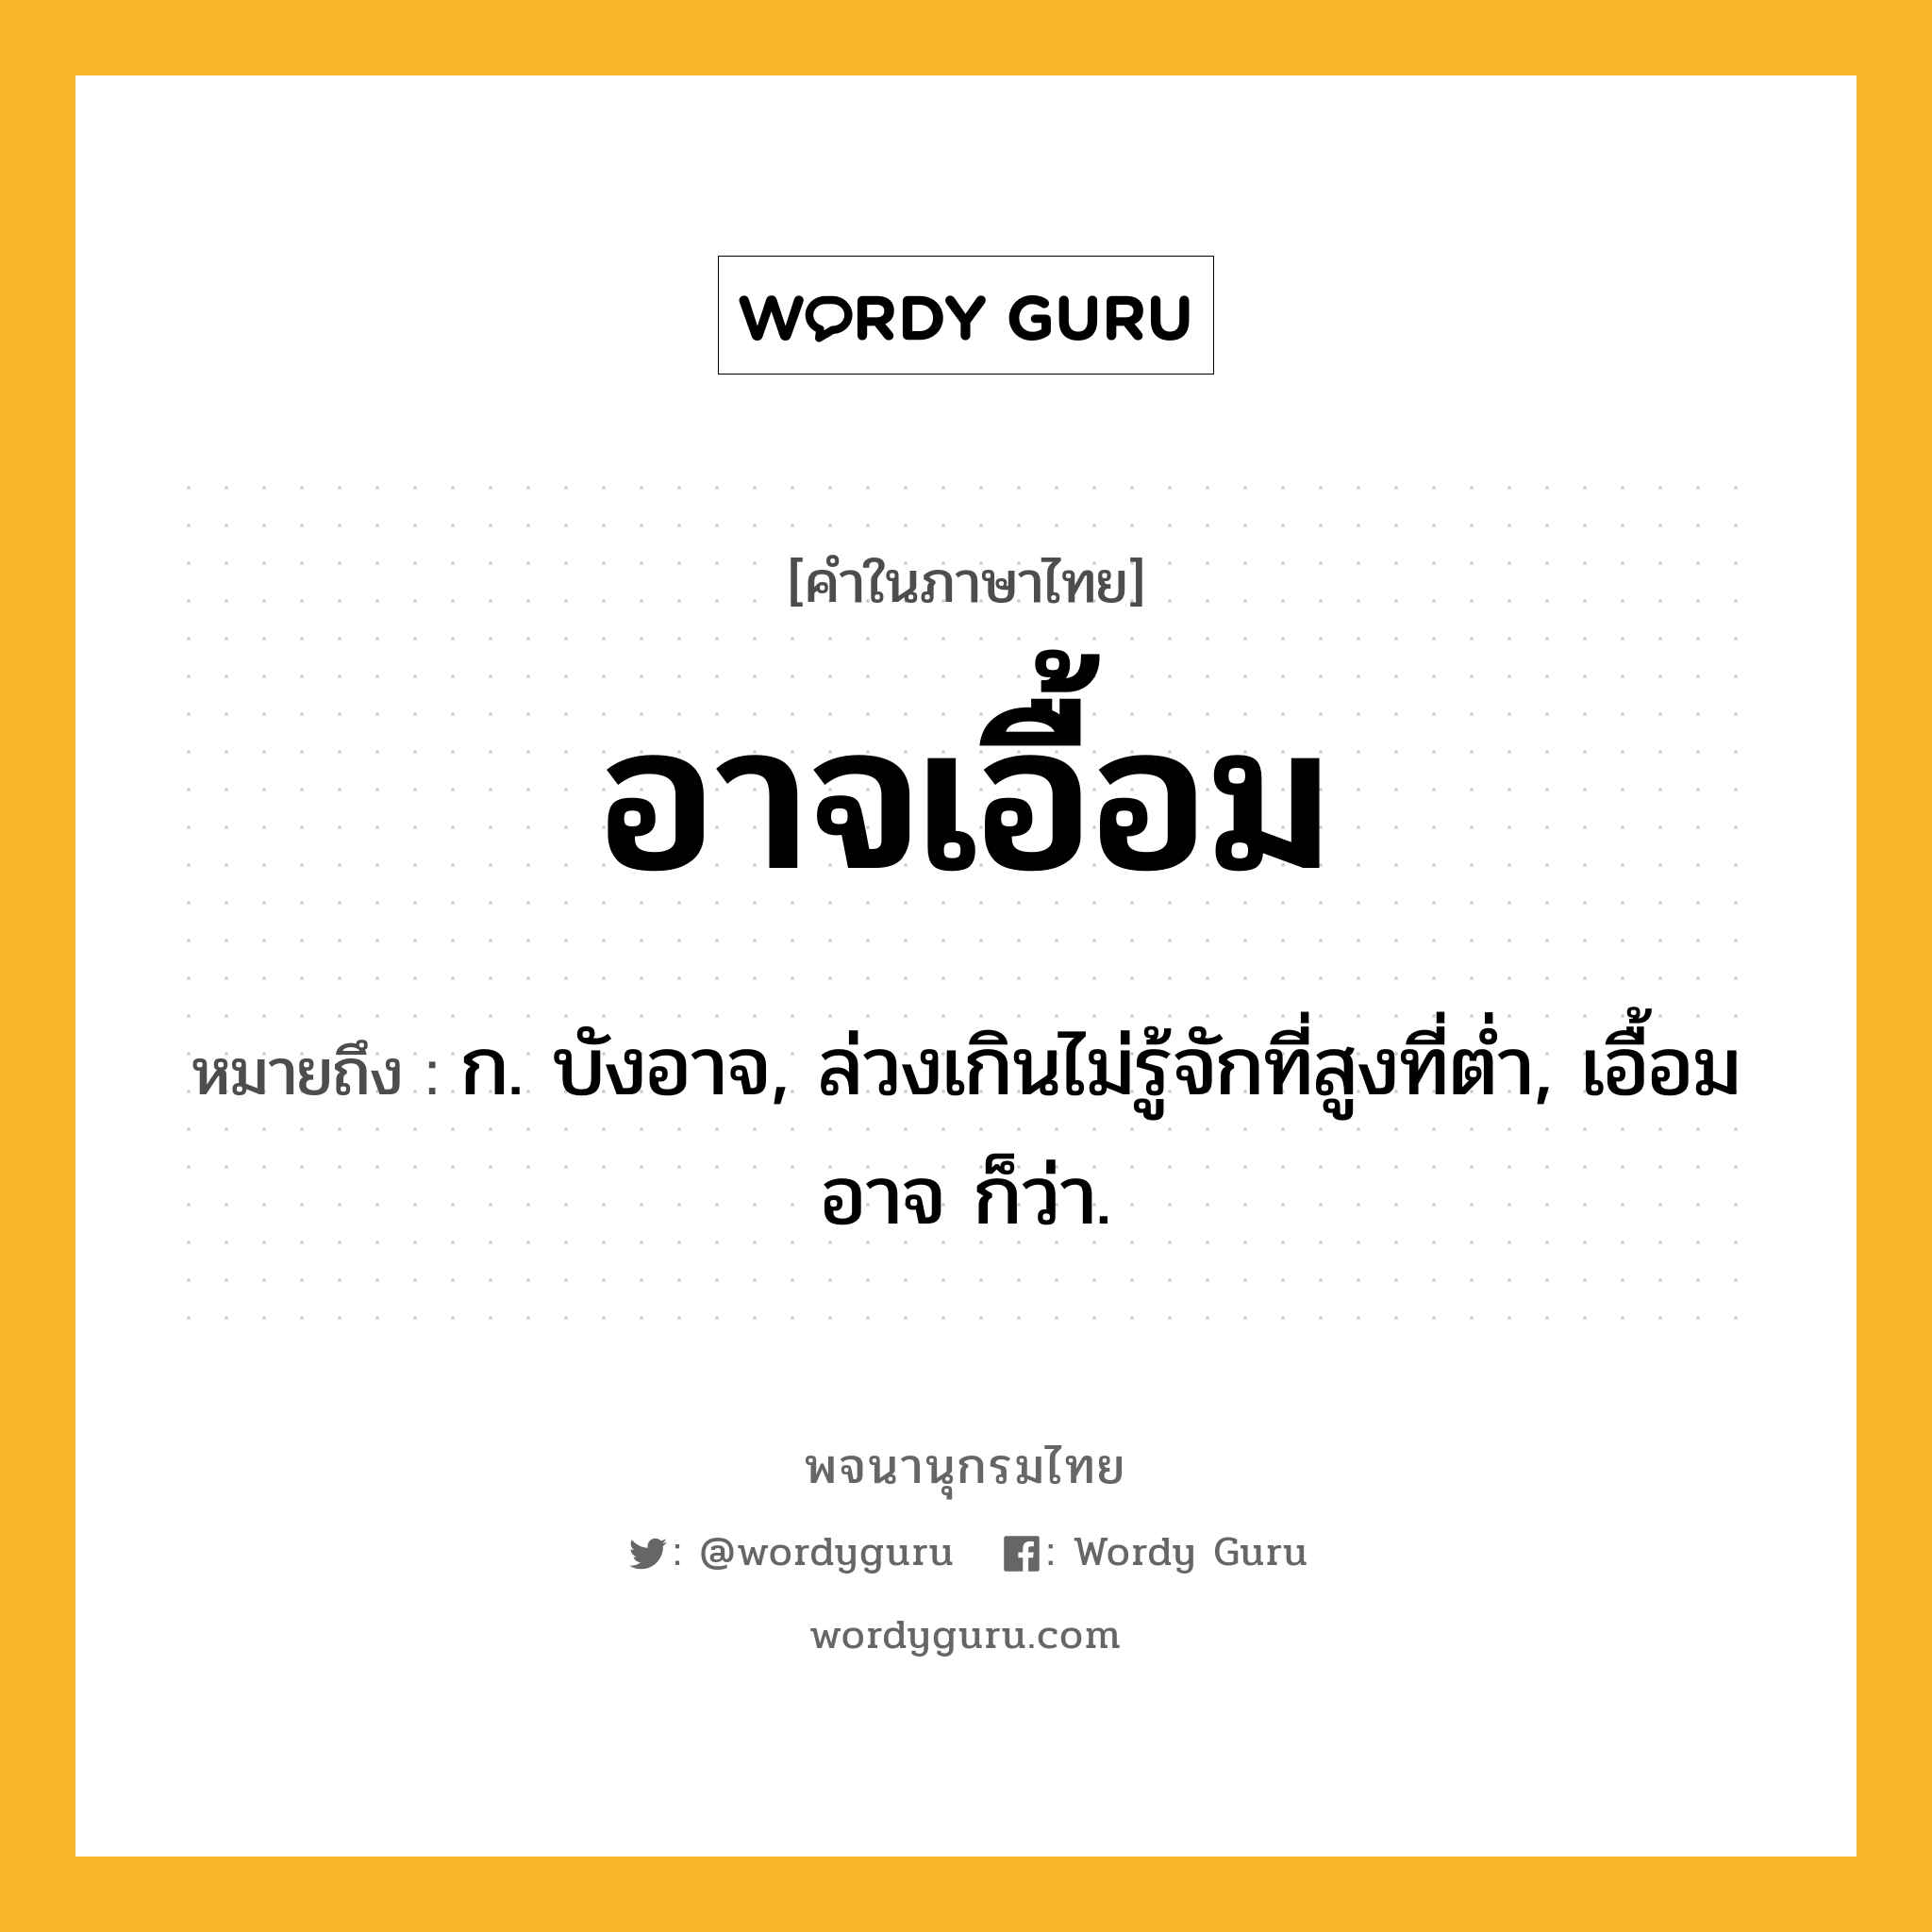 อาจเอื้อม ความหมาย หมายถึงอะไร?, คำในภาษาไทย อาจเอื้อม หมายถึง ก. บังอาจ, ล่วงเกินไม่รู้จักที่สูงที่ต่ำ, เอื้อมอาจ ก็ว่า.